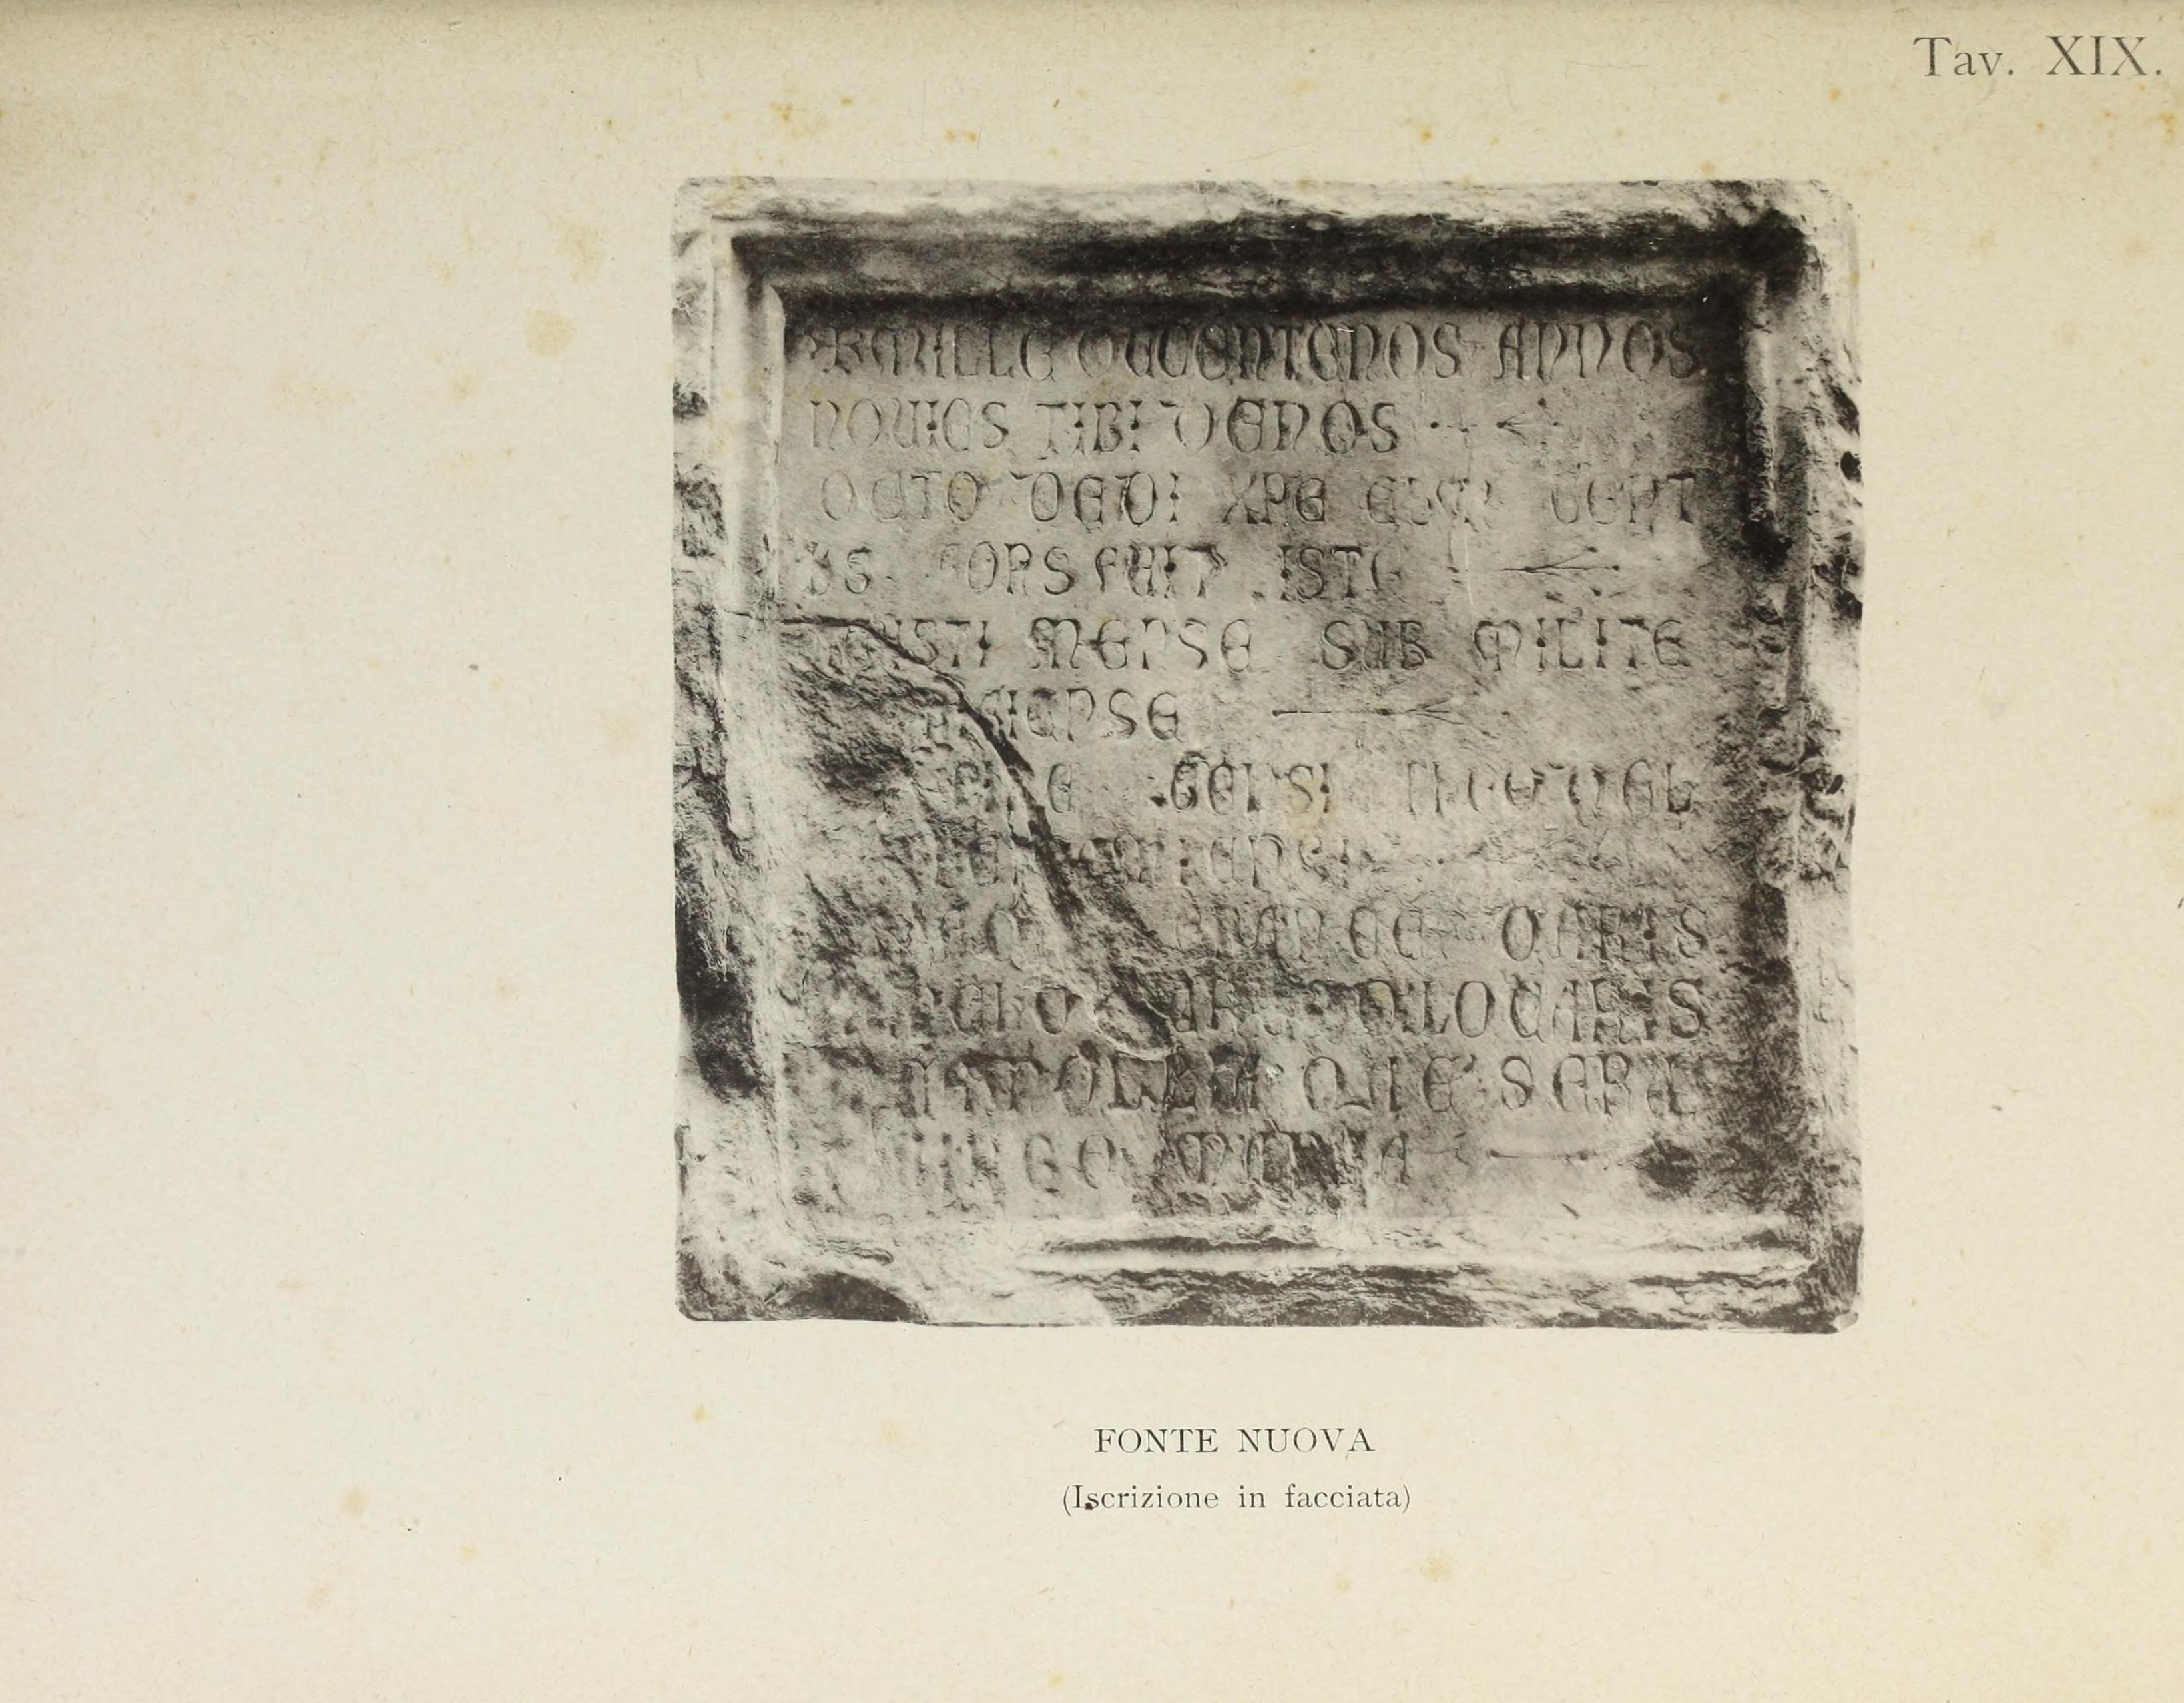 Le fonti di Siena e i loro aquedotti, note storiche dalle origini fino al MDLV (1906) (14590648140).jpg